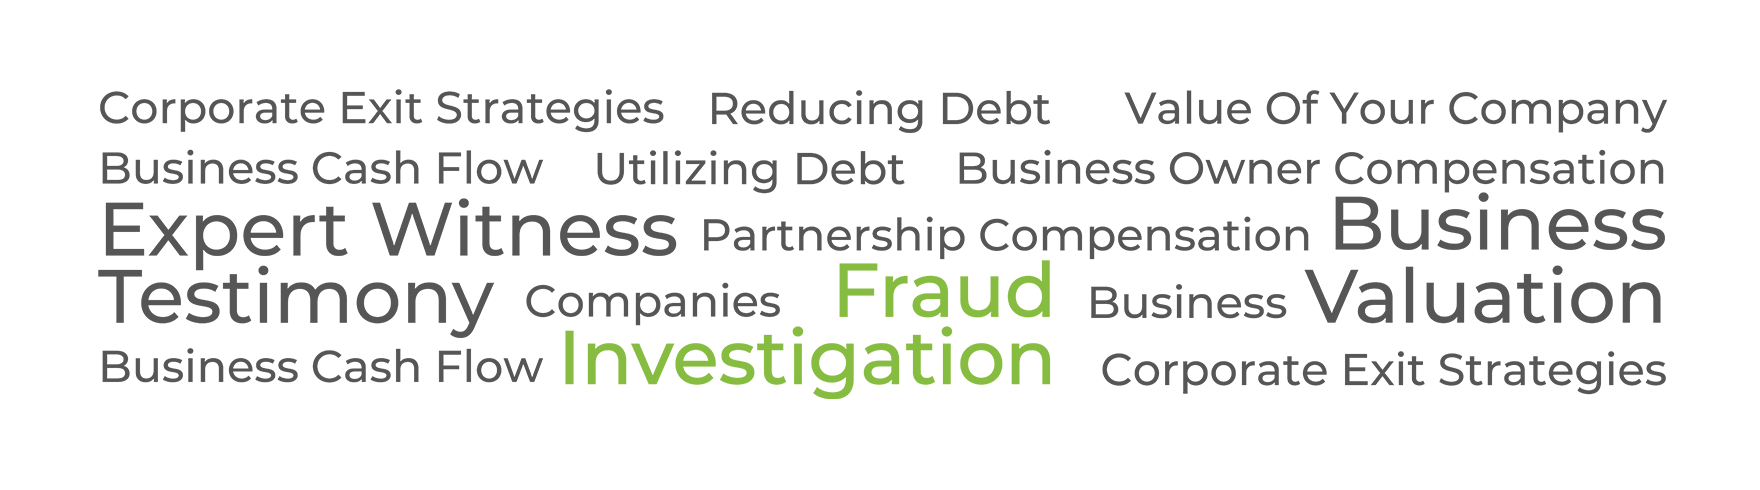 FLC Fraud Investigation global image